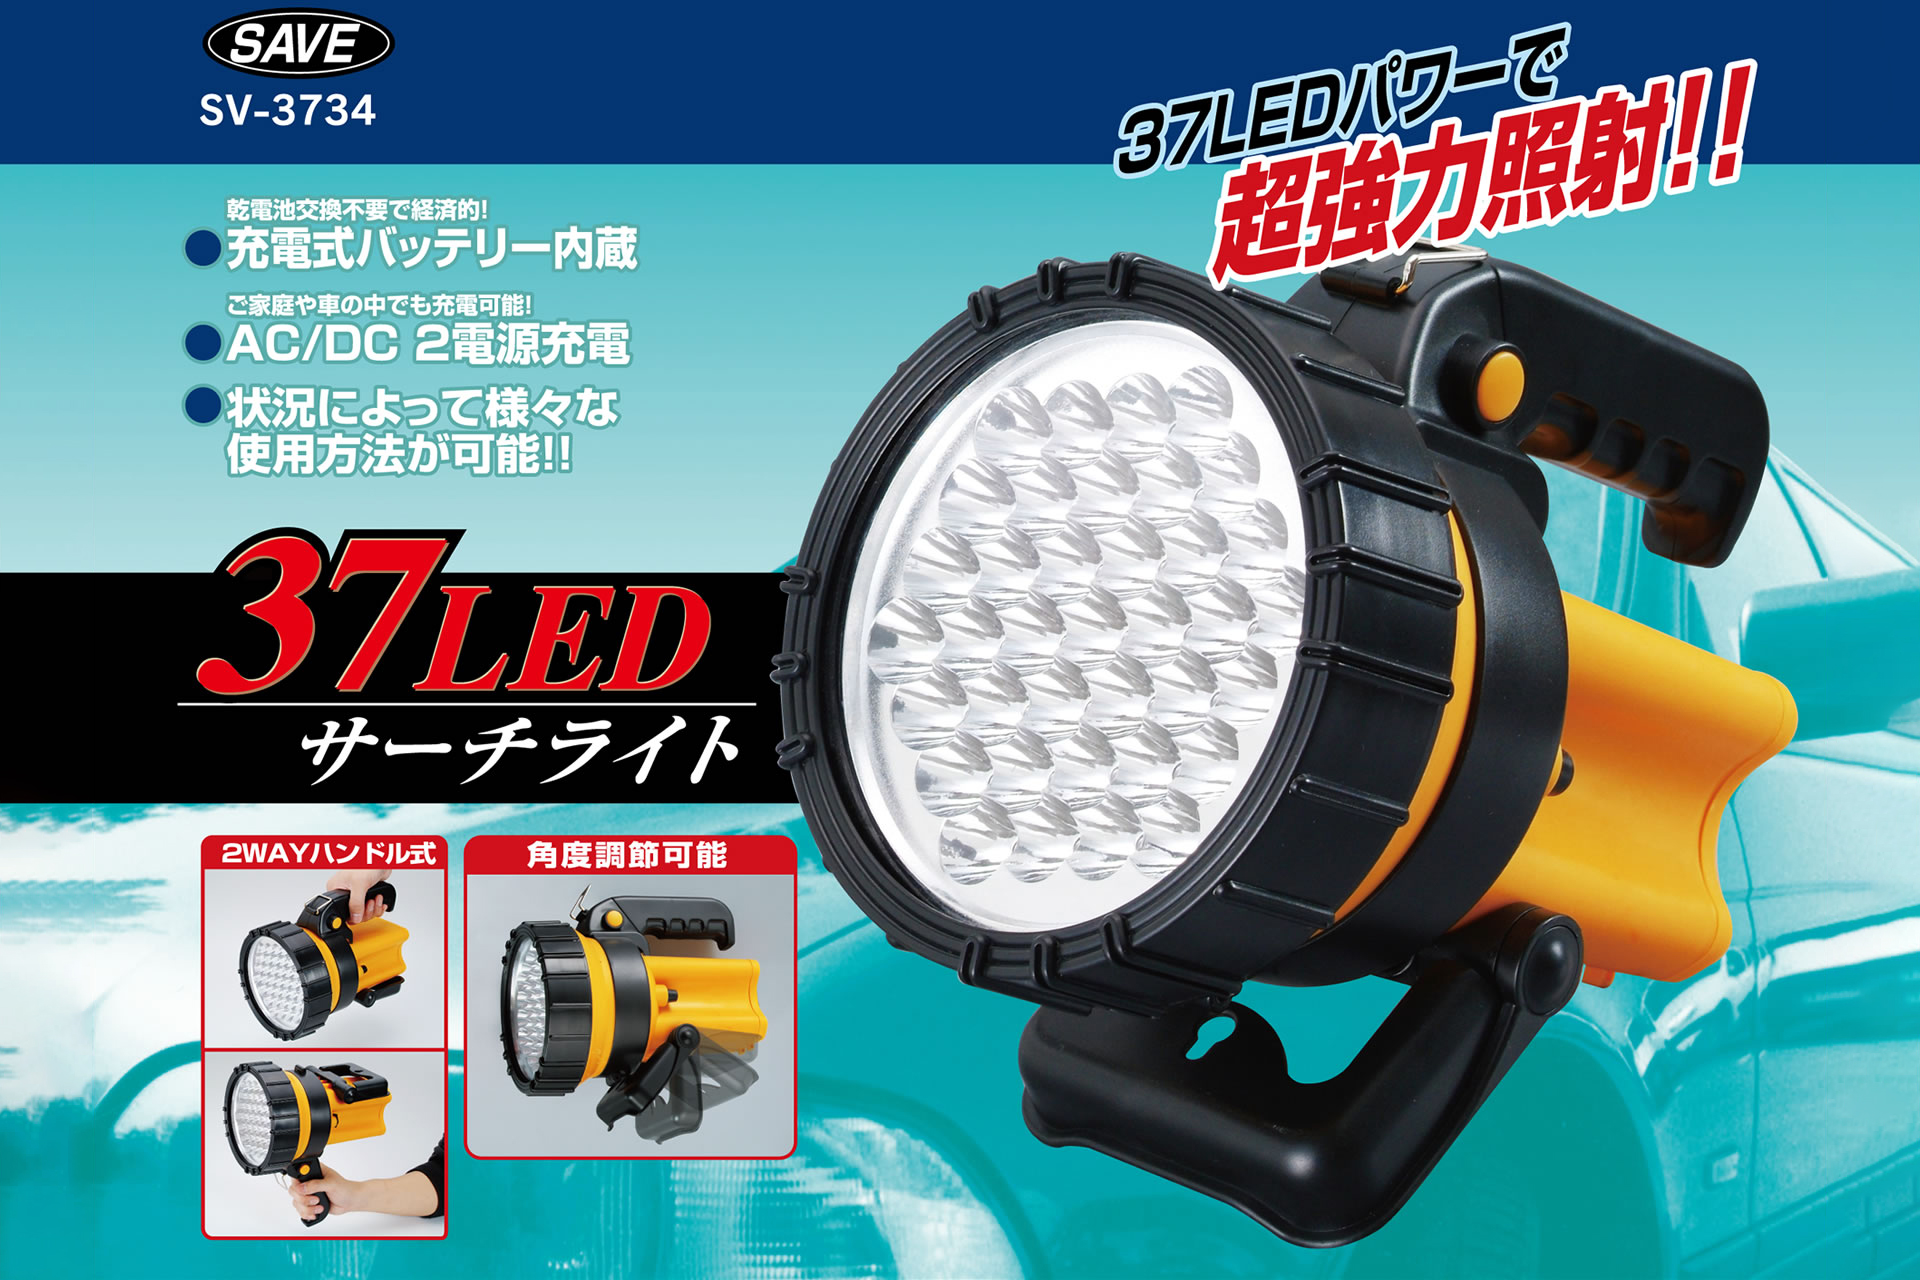 公式販売店 友愛玩具 スペシャルマルチライト LEDナイアガラライト2.5m(スペシャルマルチ) WG-0364 『クリス 